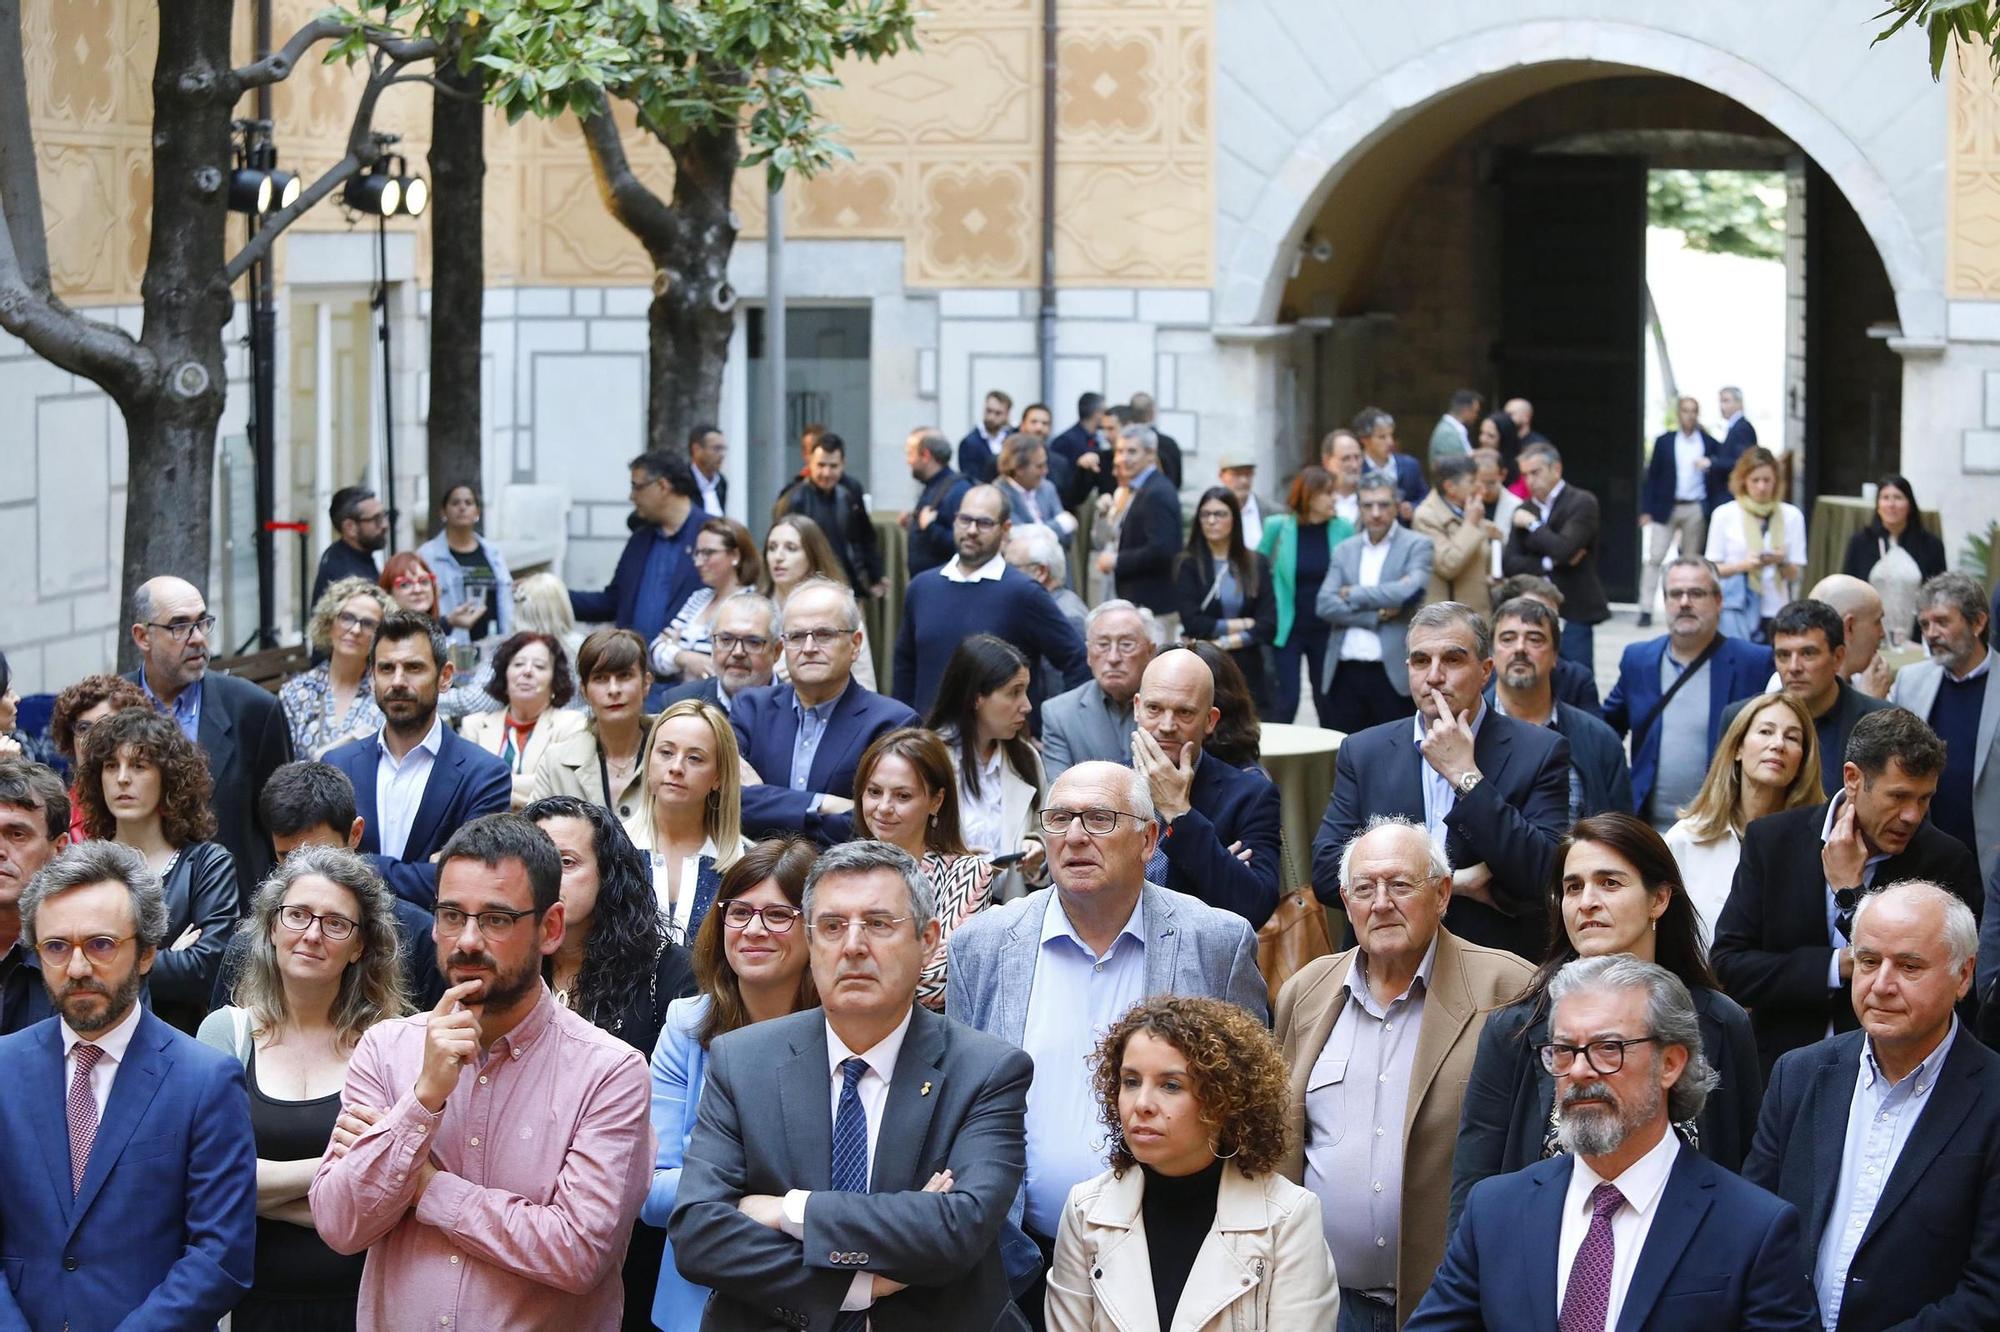 Diari de Girona celebra el 135è aniversari